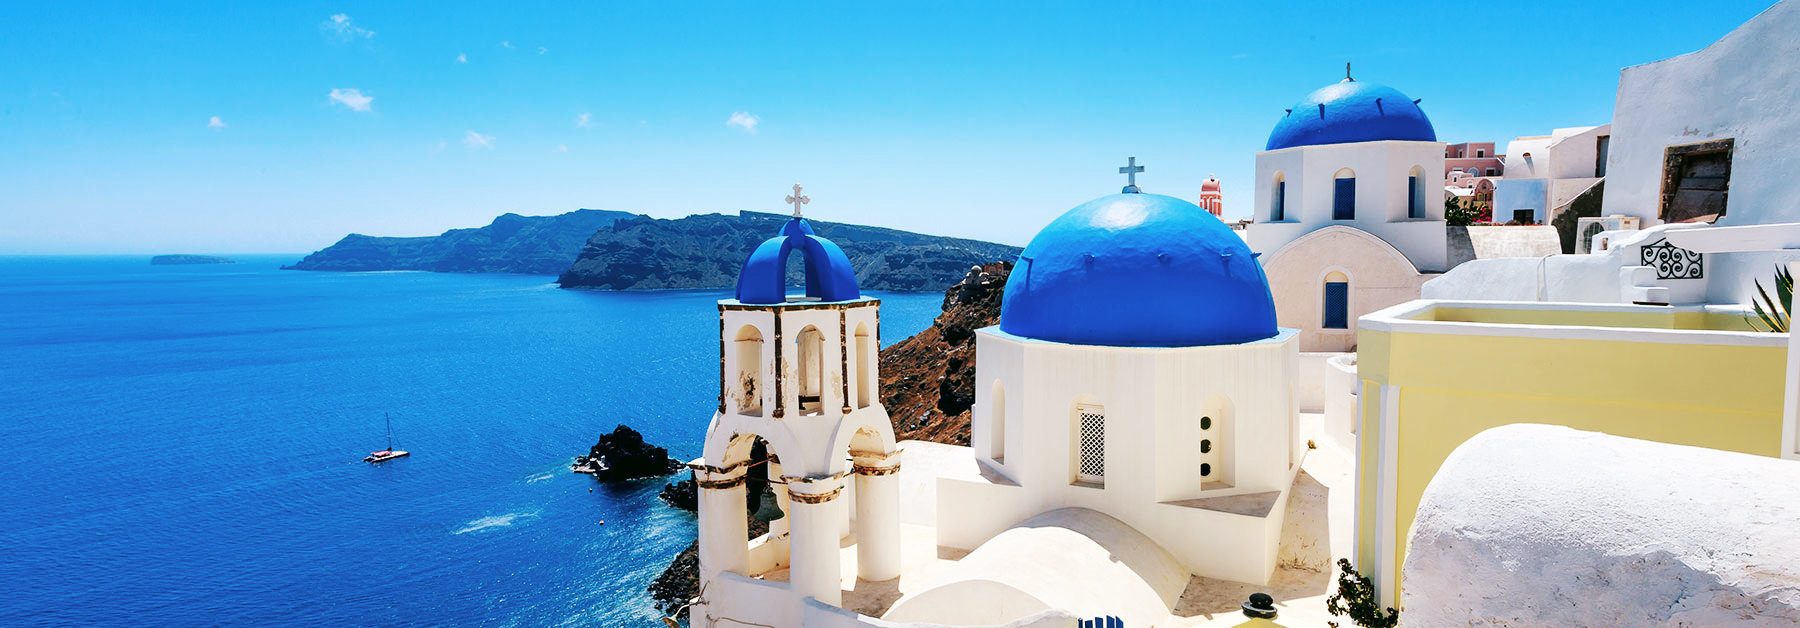 Grecia hoteis e roteiros de viagem 